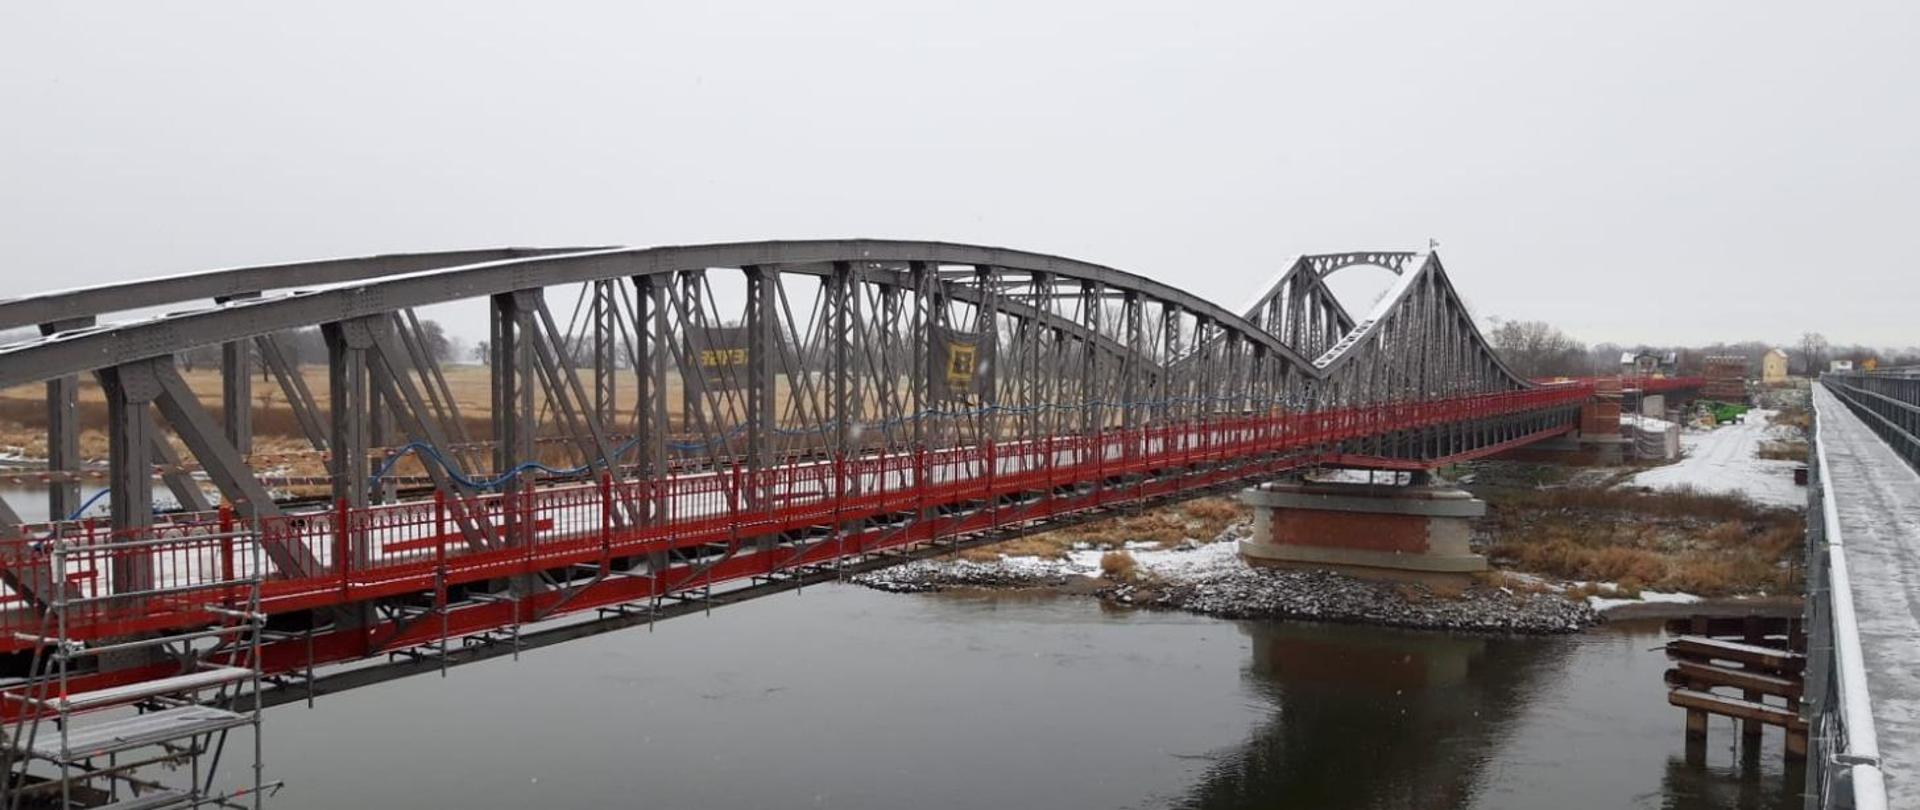 Stalowy most z barierkami w kolorze czerwonym z widocznymi elementami rusztowania związanego z trwającym remontem. Poniżej przepływa Ścinawa. Na moście, brzegu i w tle niewielka warstwa śniegu po niedawnych opadach.